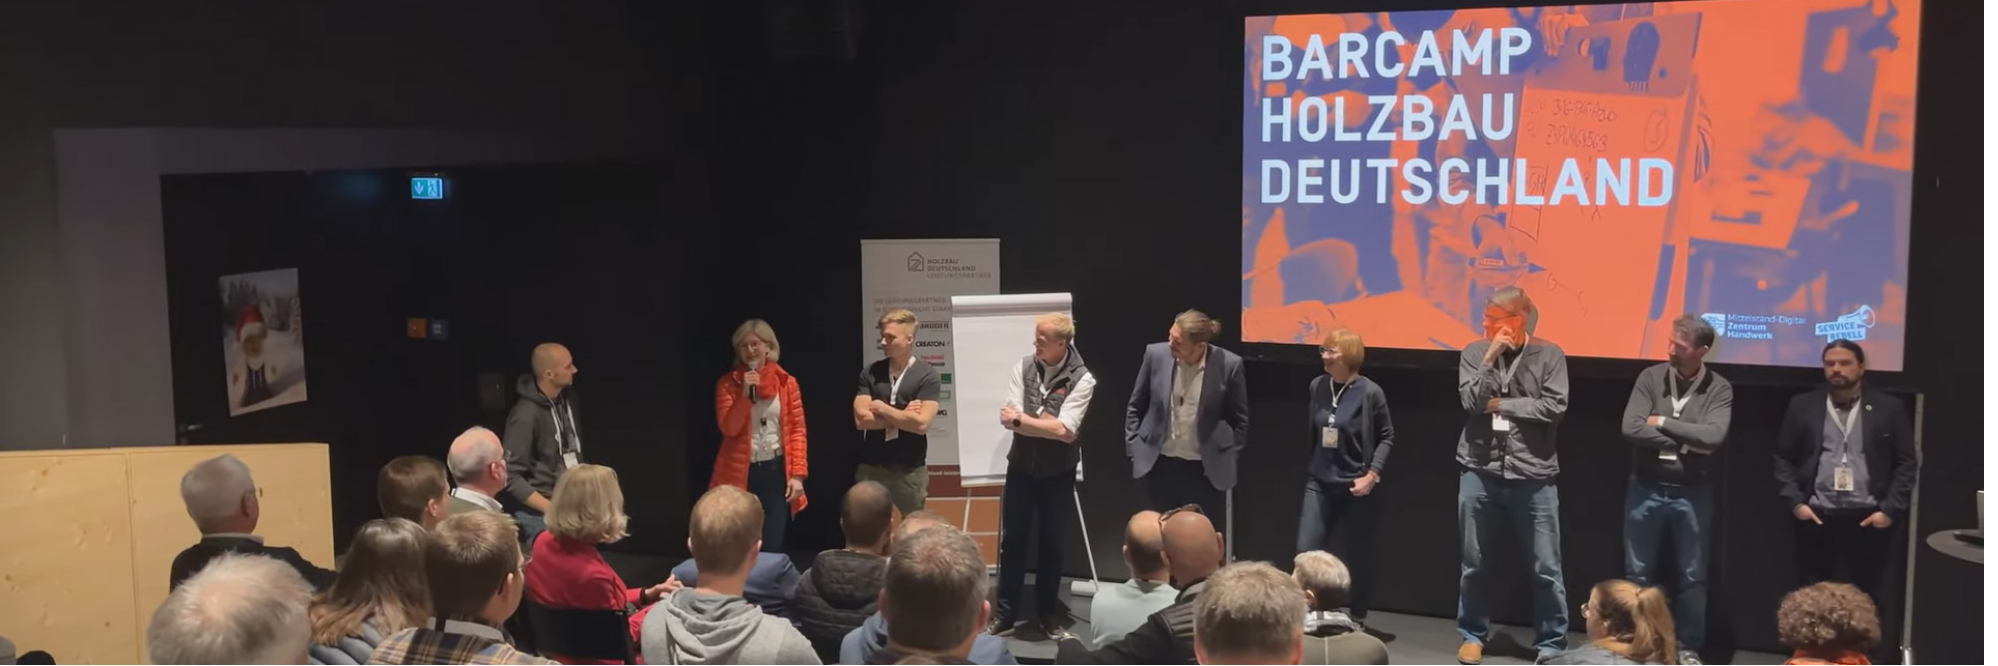 Holzbau Barcamp Deutschland – 12 Sessions für den Wandel